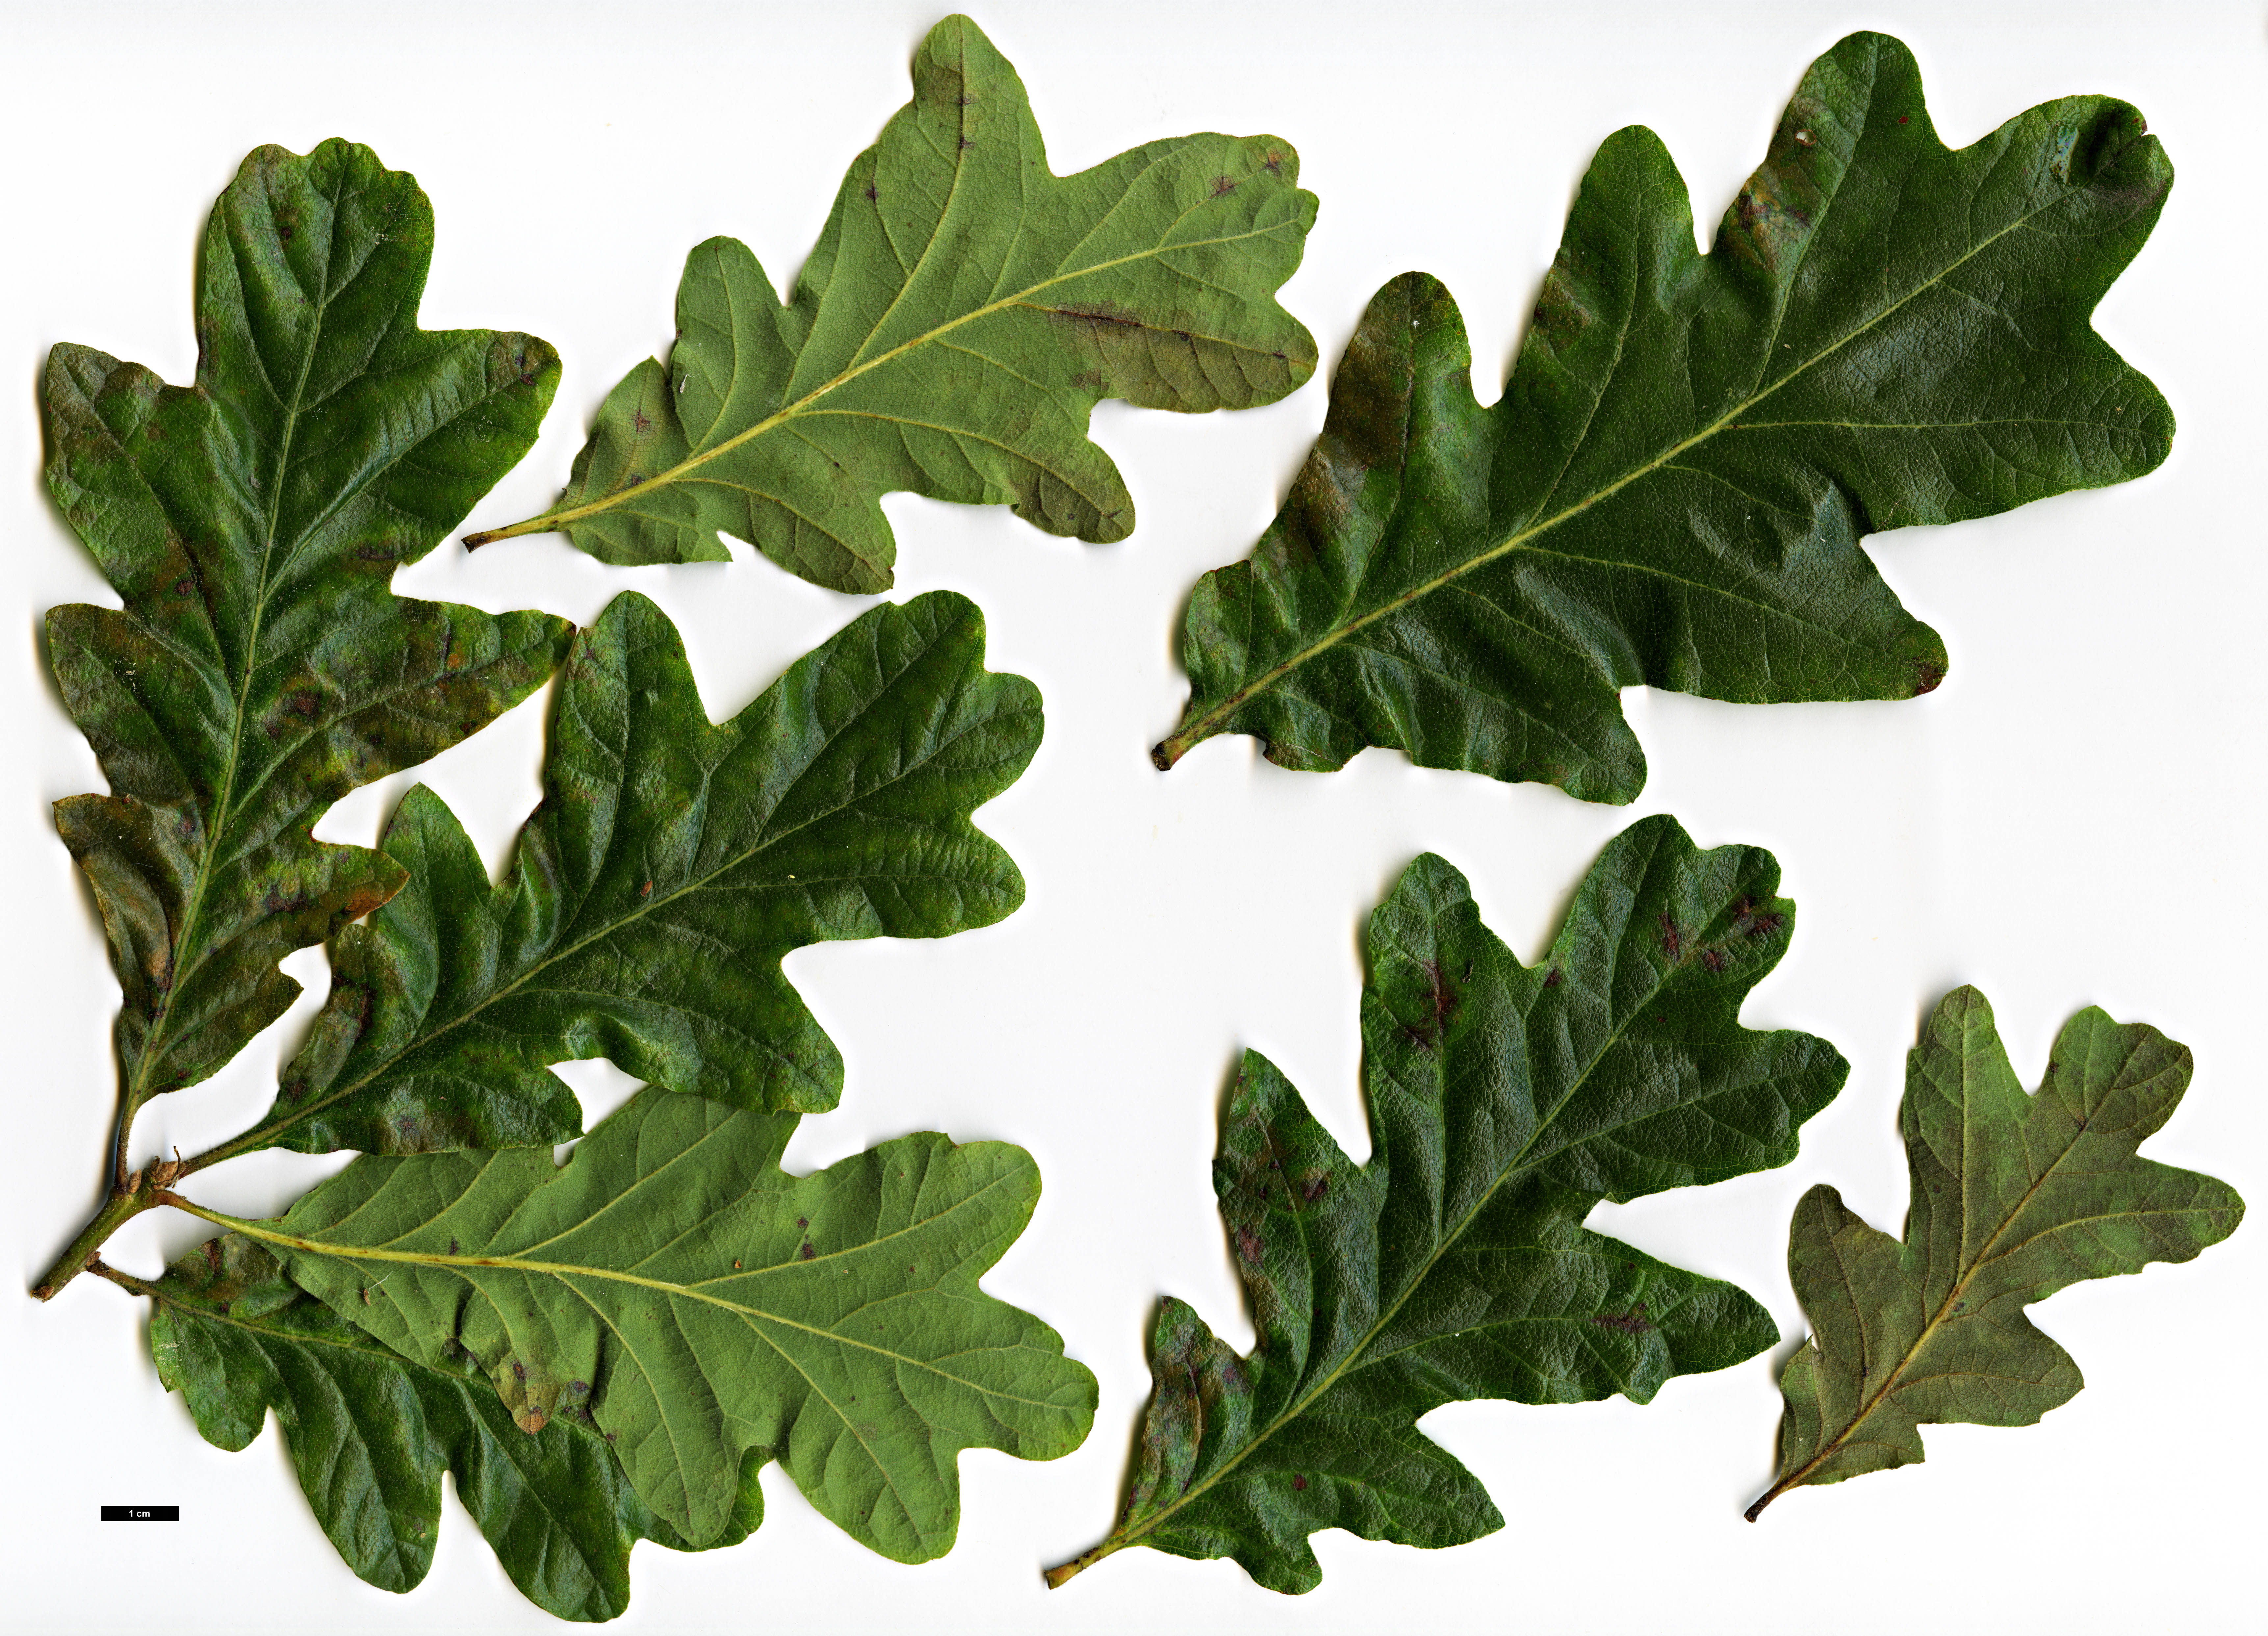 High resolution image: Family: Fagaceae - Genus: Quercus - Taxon: garryana